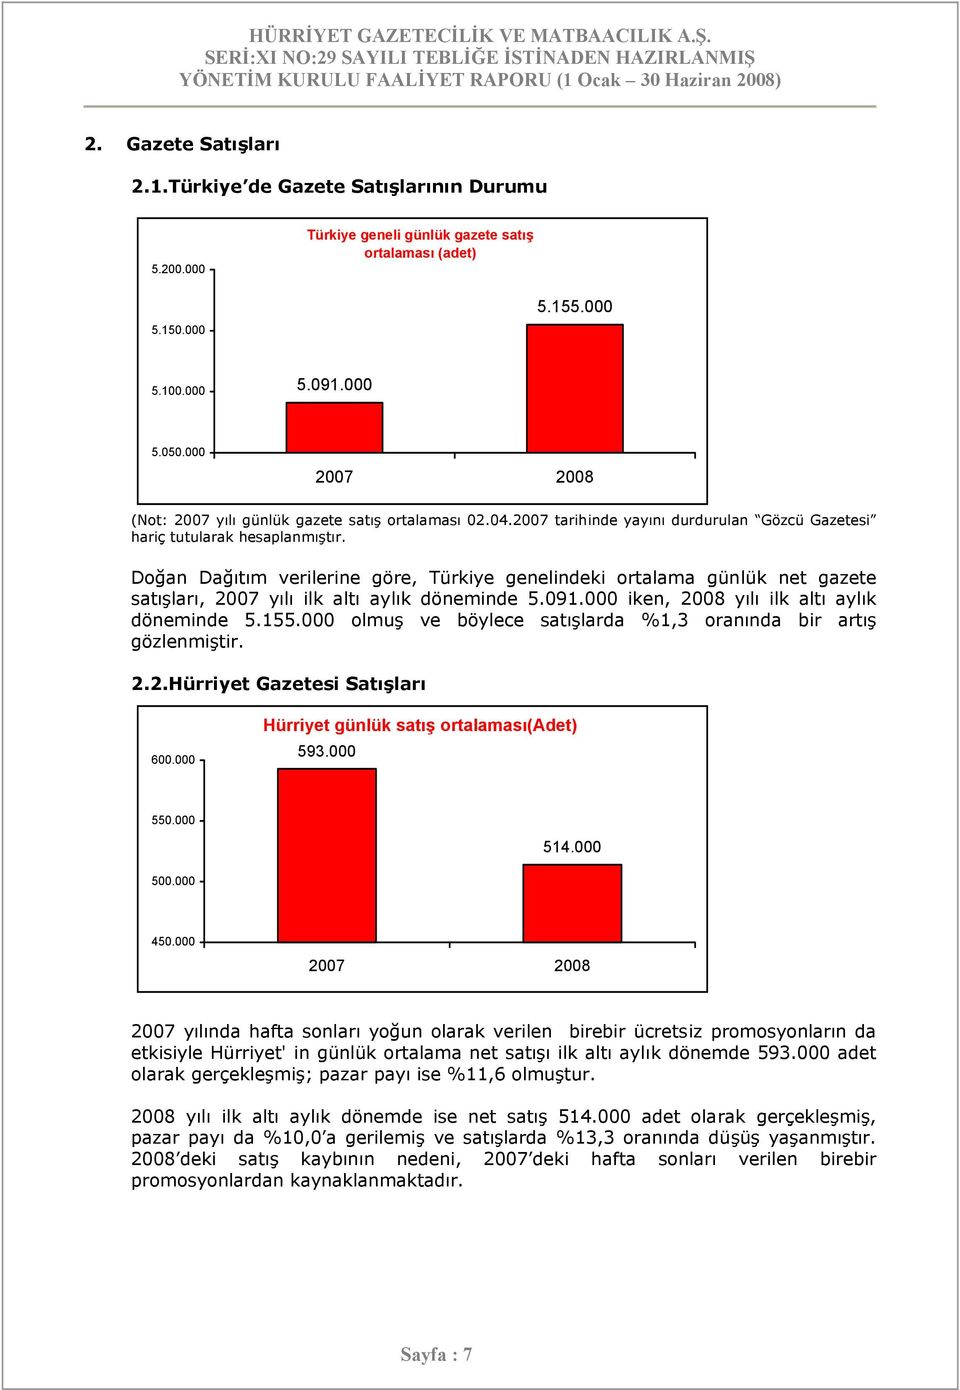 Doğan Dağıtım verilerine göre, Türkiye genelindeki ortalama günlük net gazete satışları, 2007 yılı ilk altı aylık döneminde 5.091.000 iken, 2008 yılı ilk altı aylık döneminde 5.155.